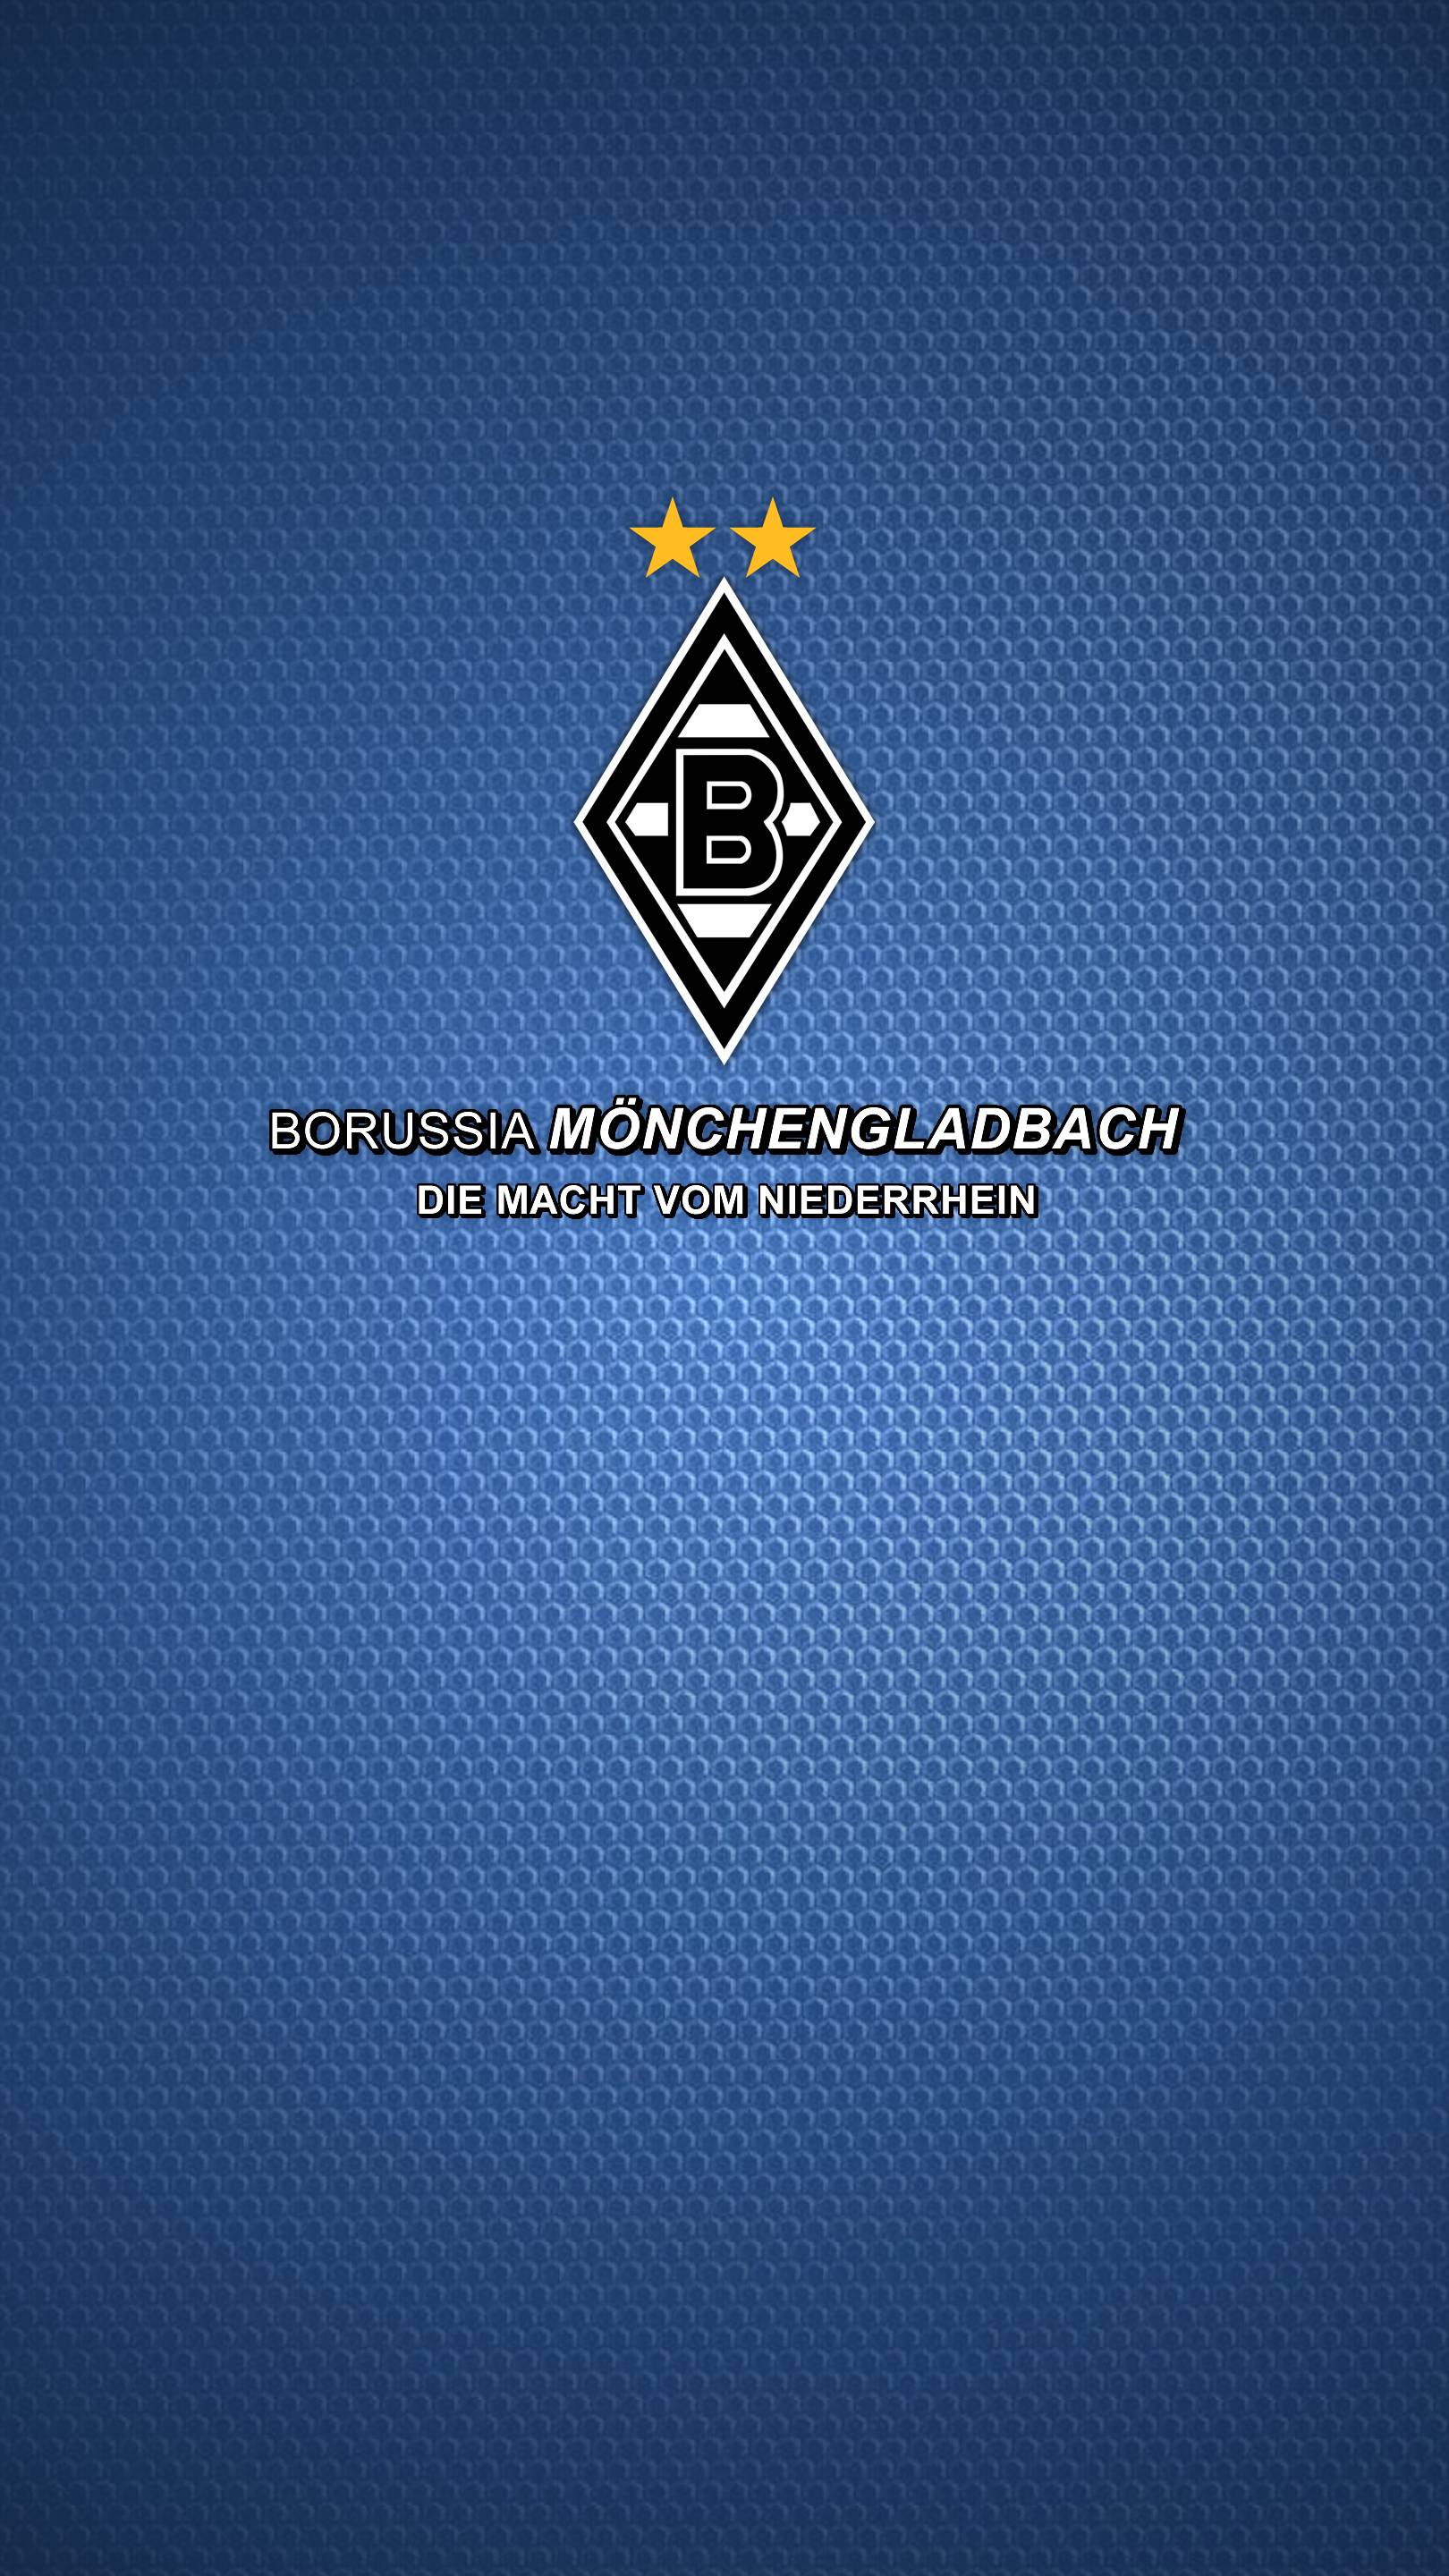 Samsung Borussia Monchengladbach Wallpaper. Full HD Picture